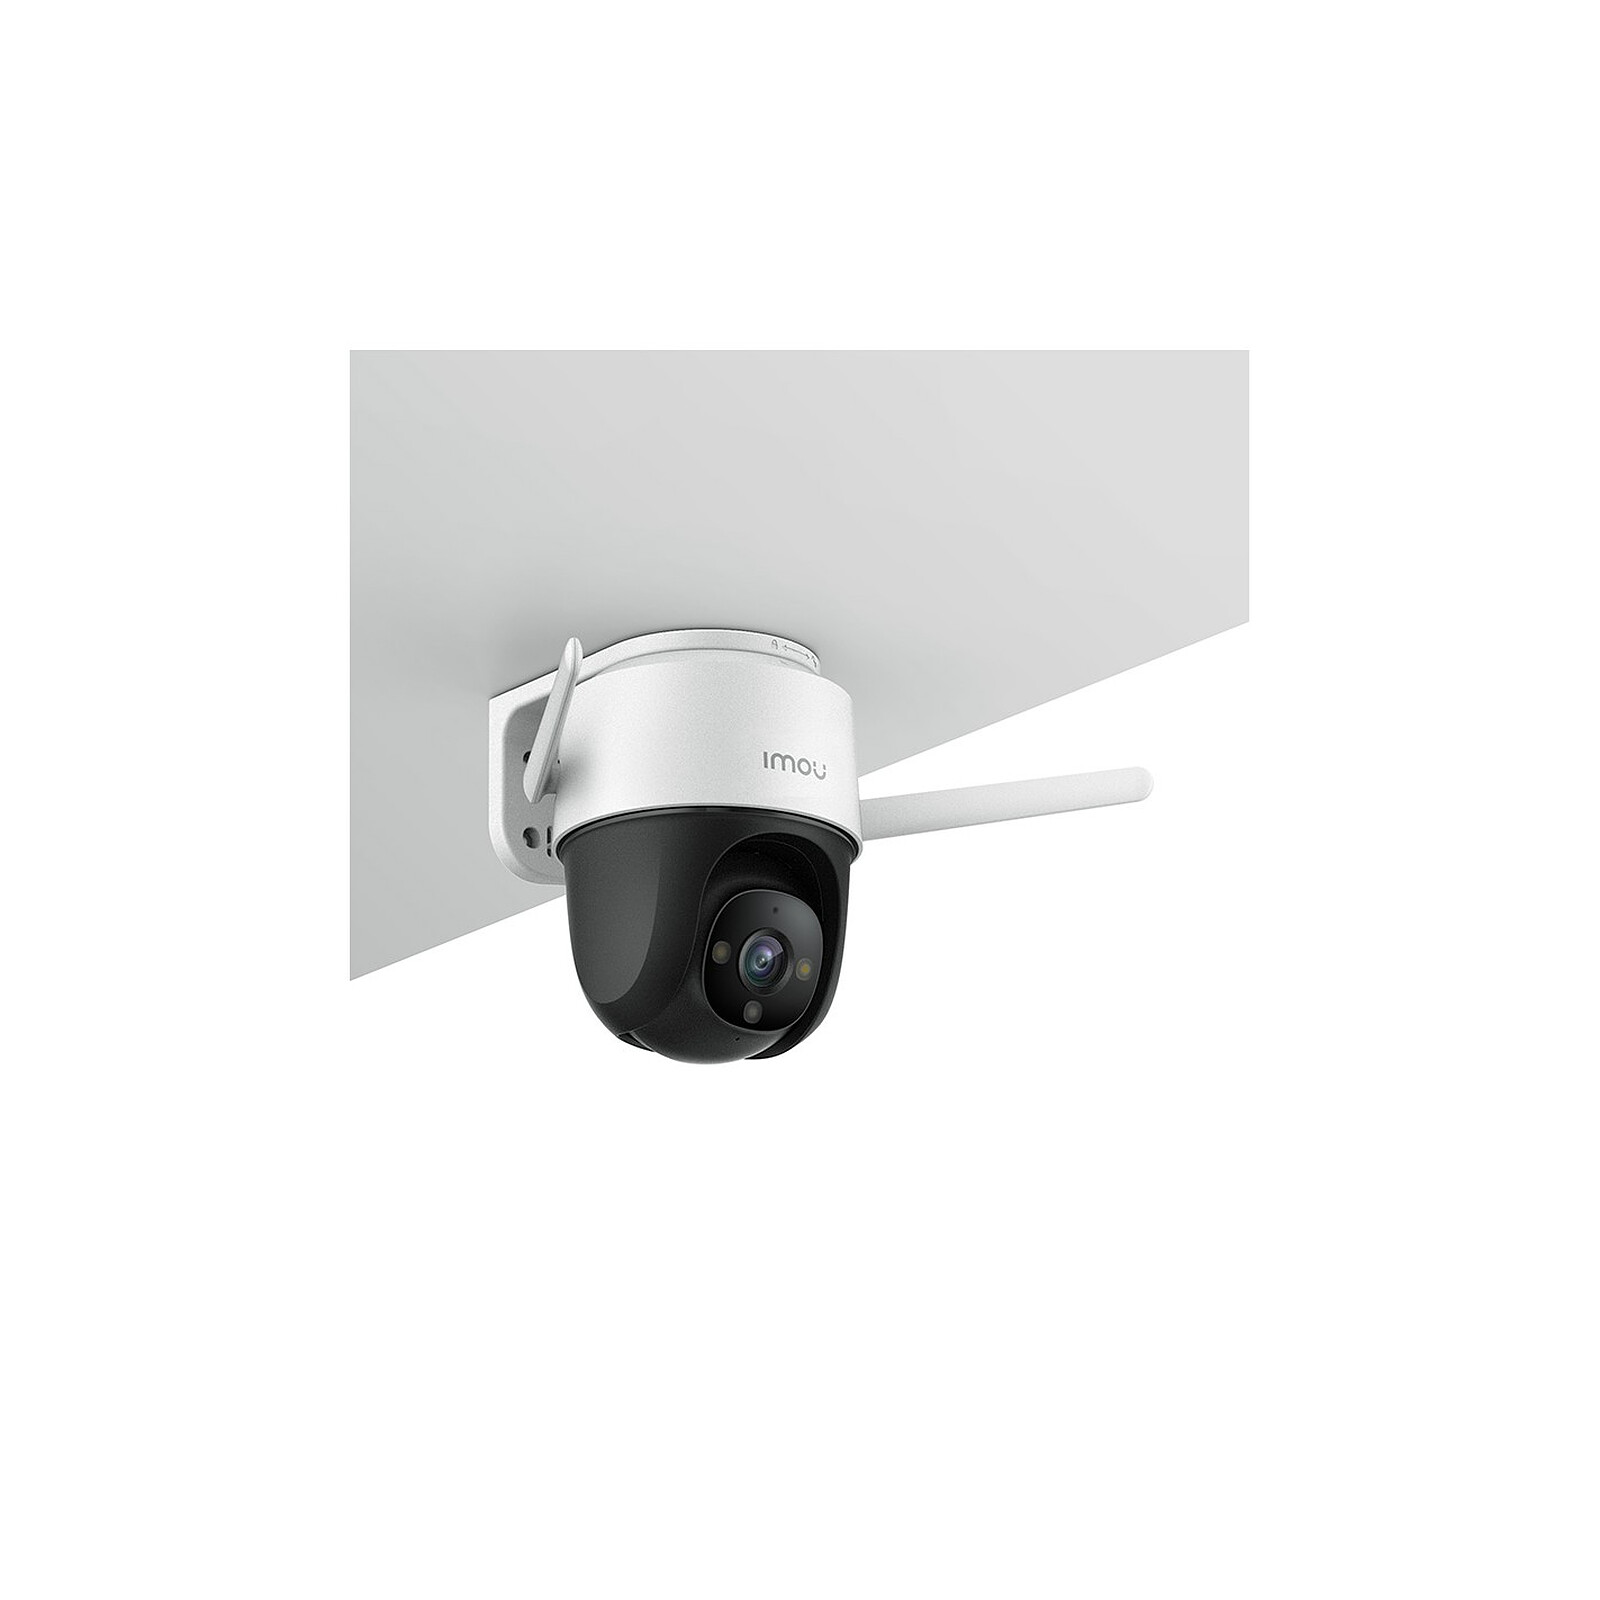 Imou - Caméra IP PTZ Couleur 2MP - Caméra de surveillance - LDLC